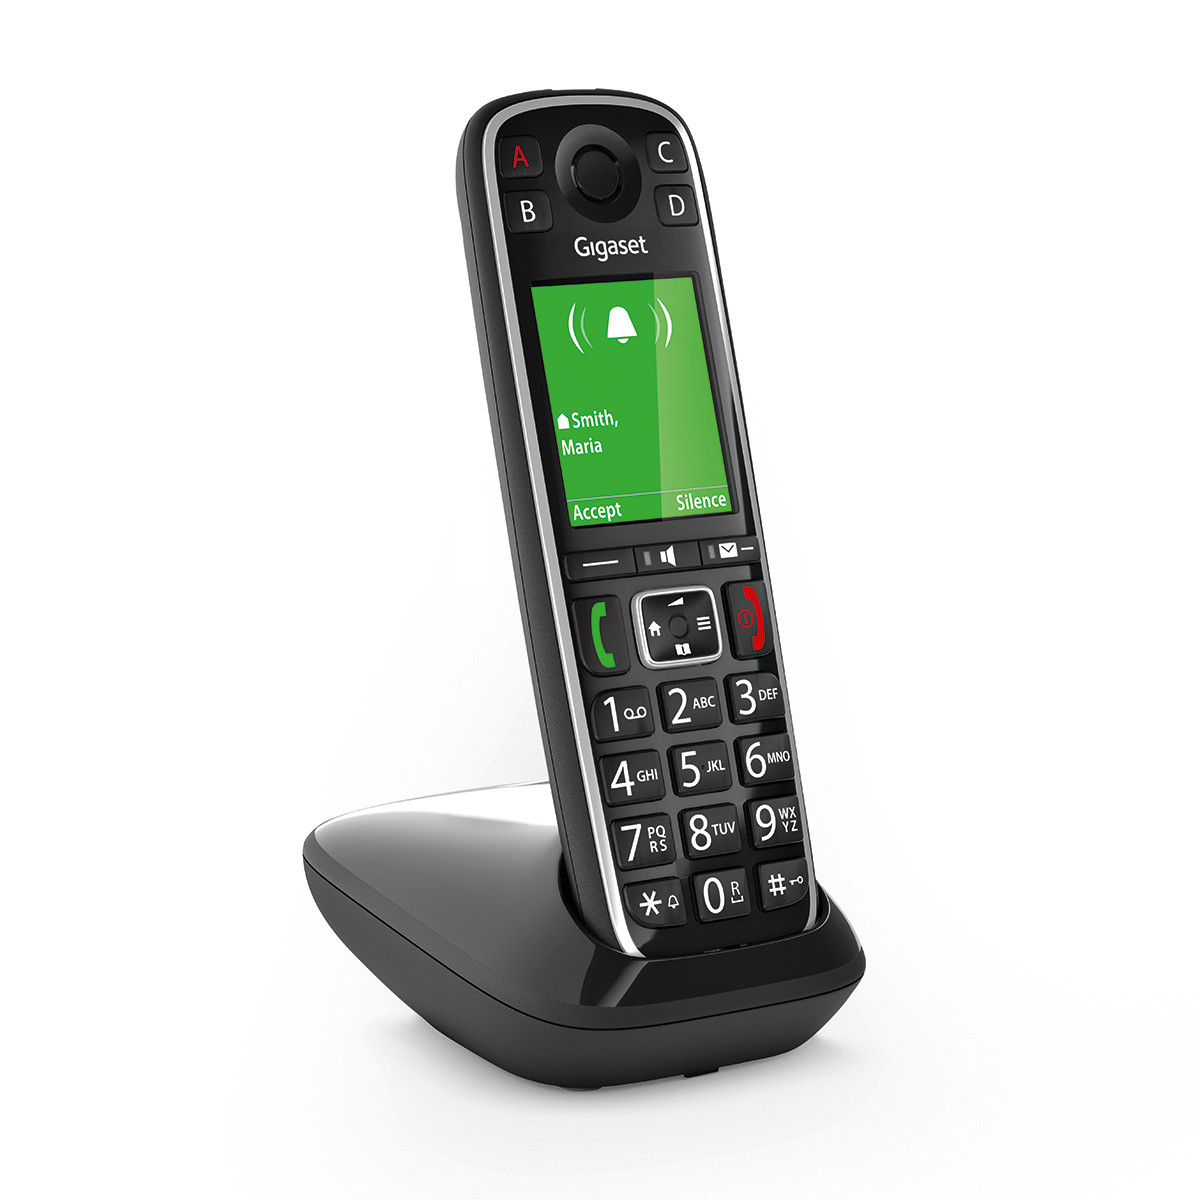 Noir Téléphone fixe sans fil avec larges touches et grand écran couleur rétroéclairés et nombreuses fonctions pour la protection contre les appels indésirables Gigaset E720 